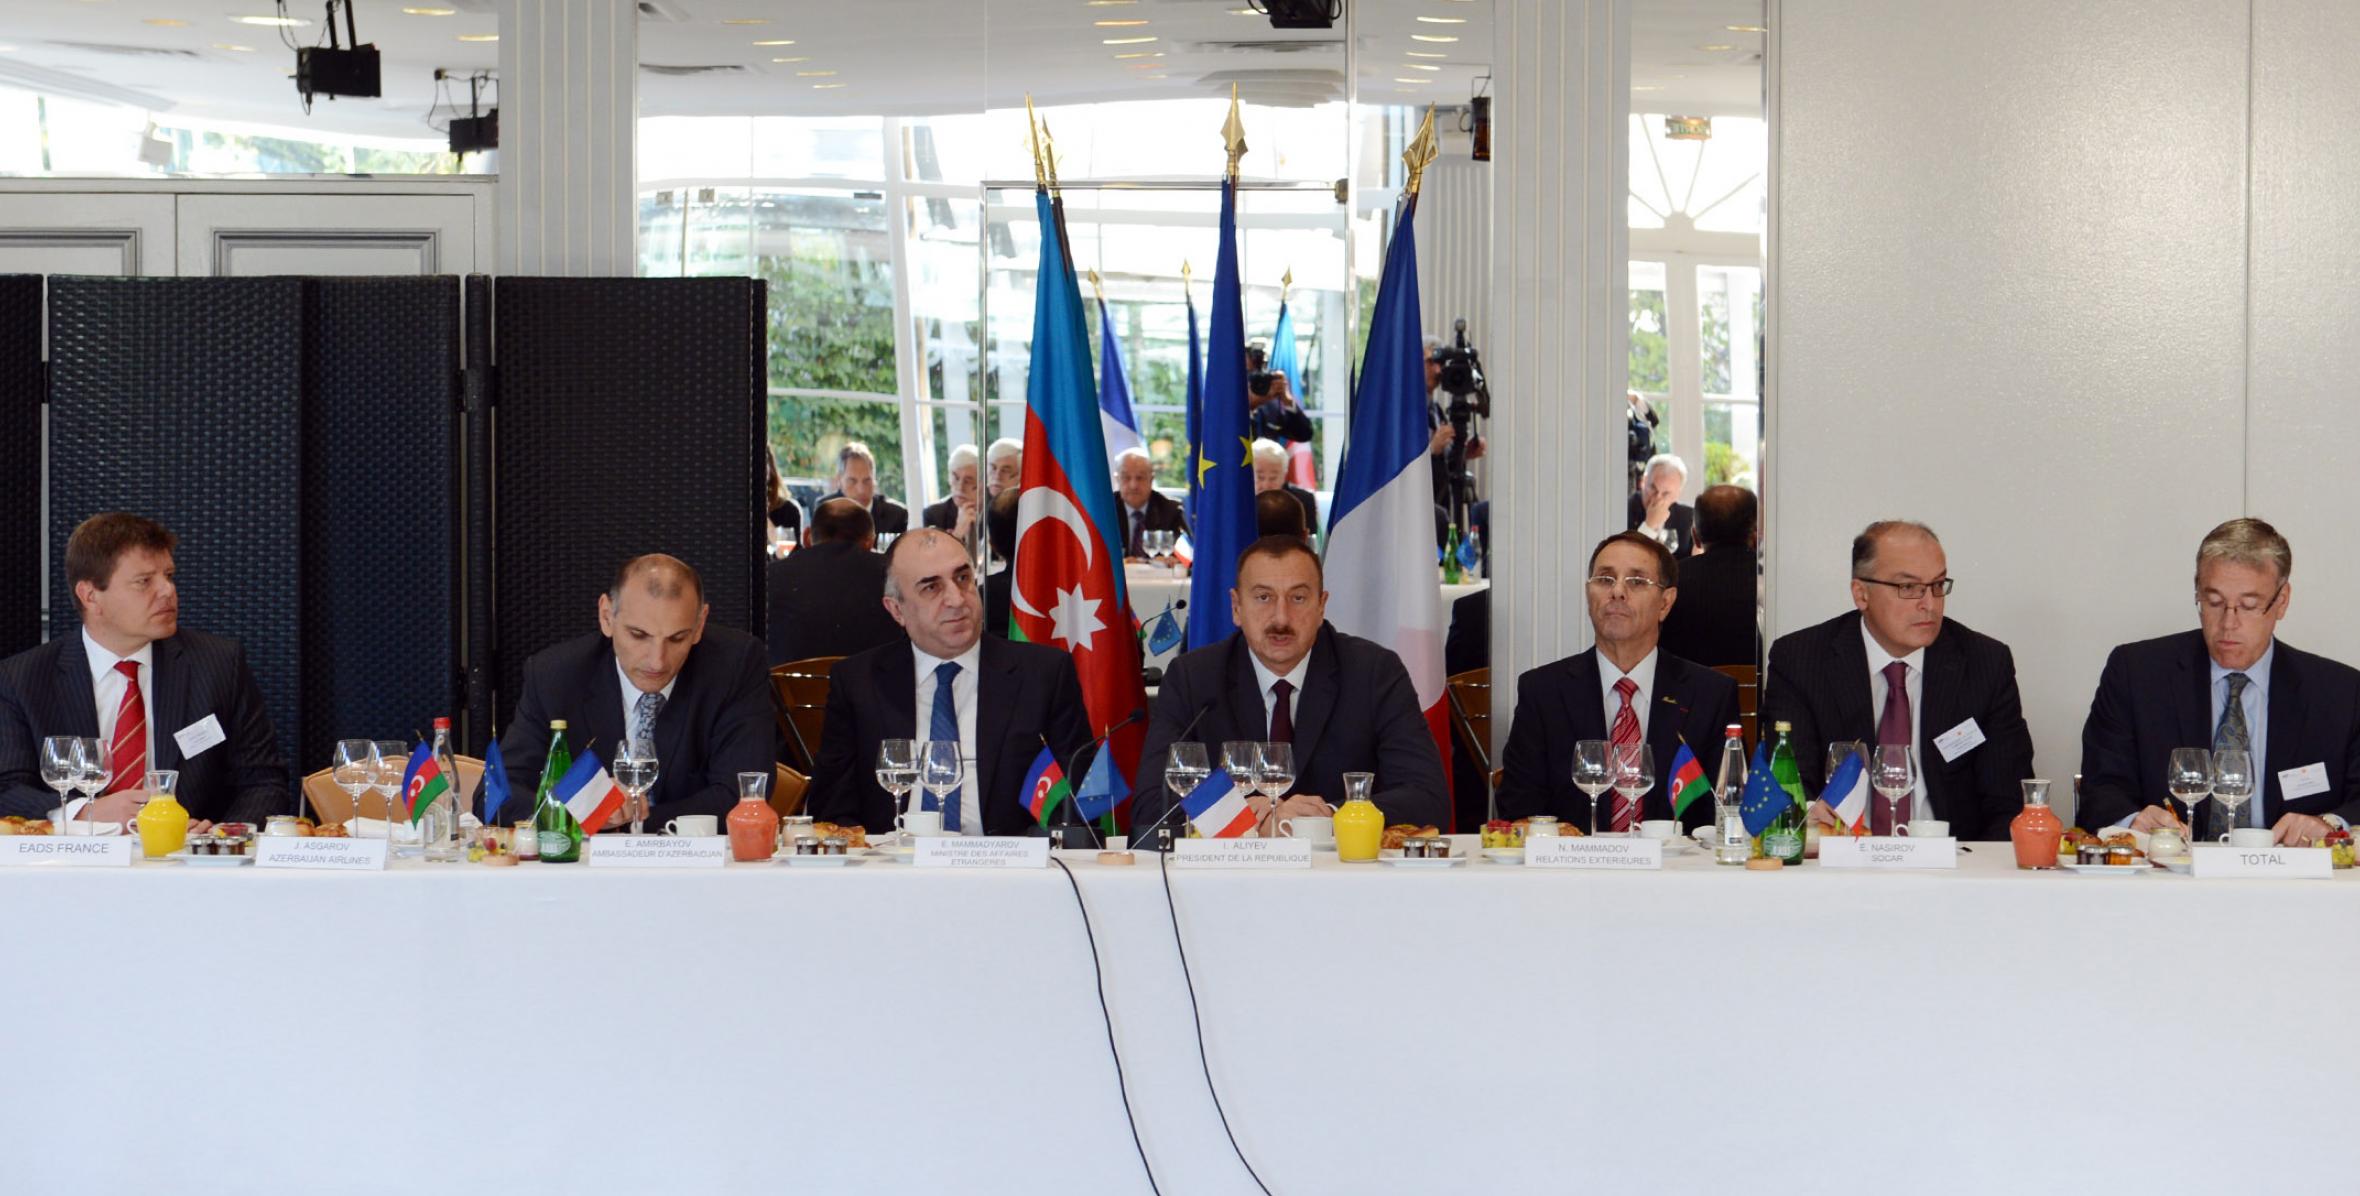 Ilham Aliyev met with businessmen members of MEDEF in Paris